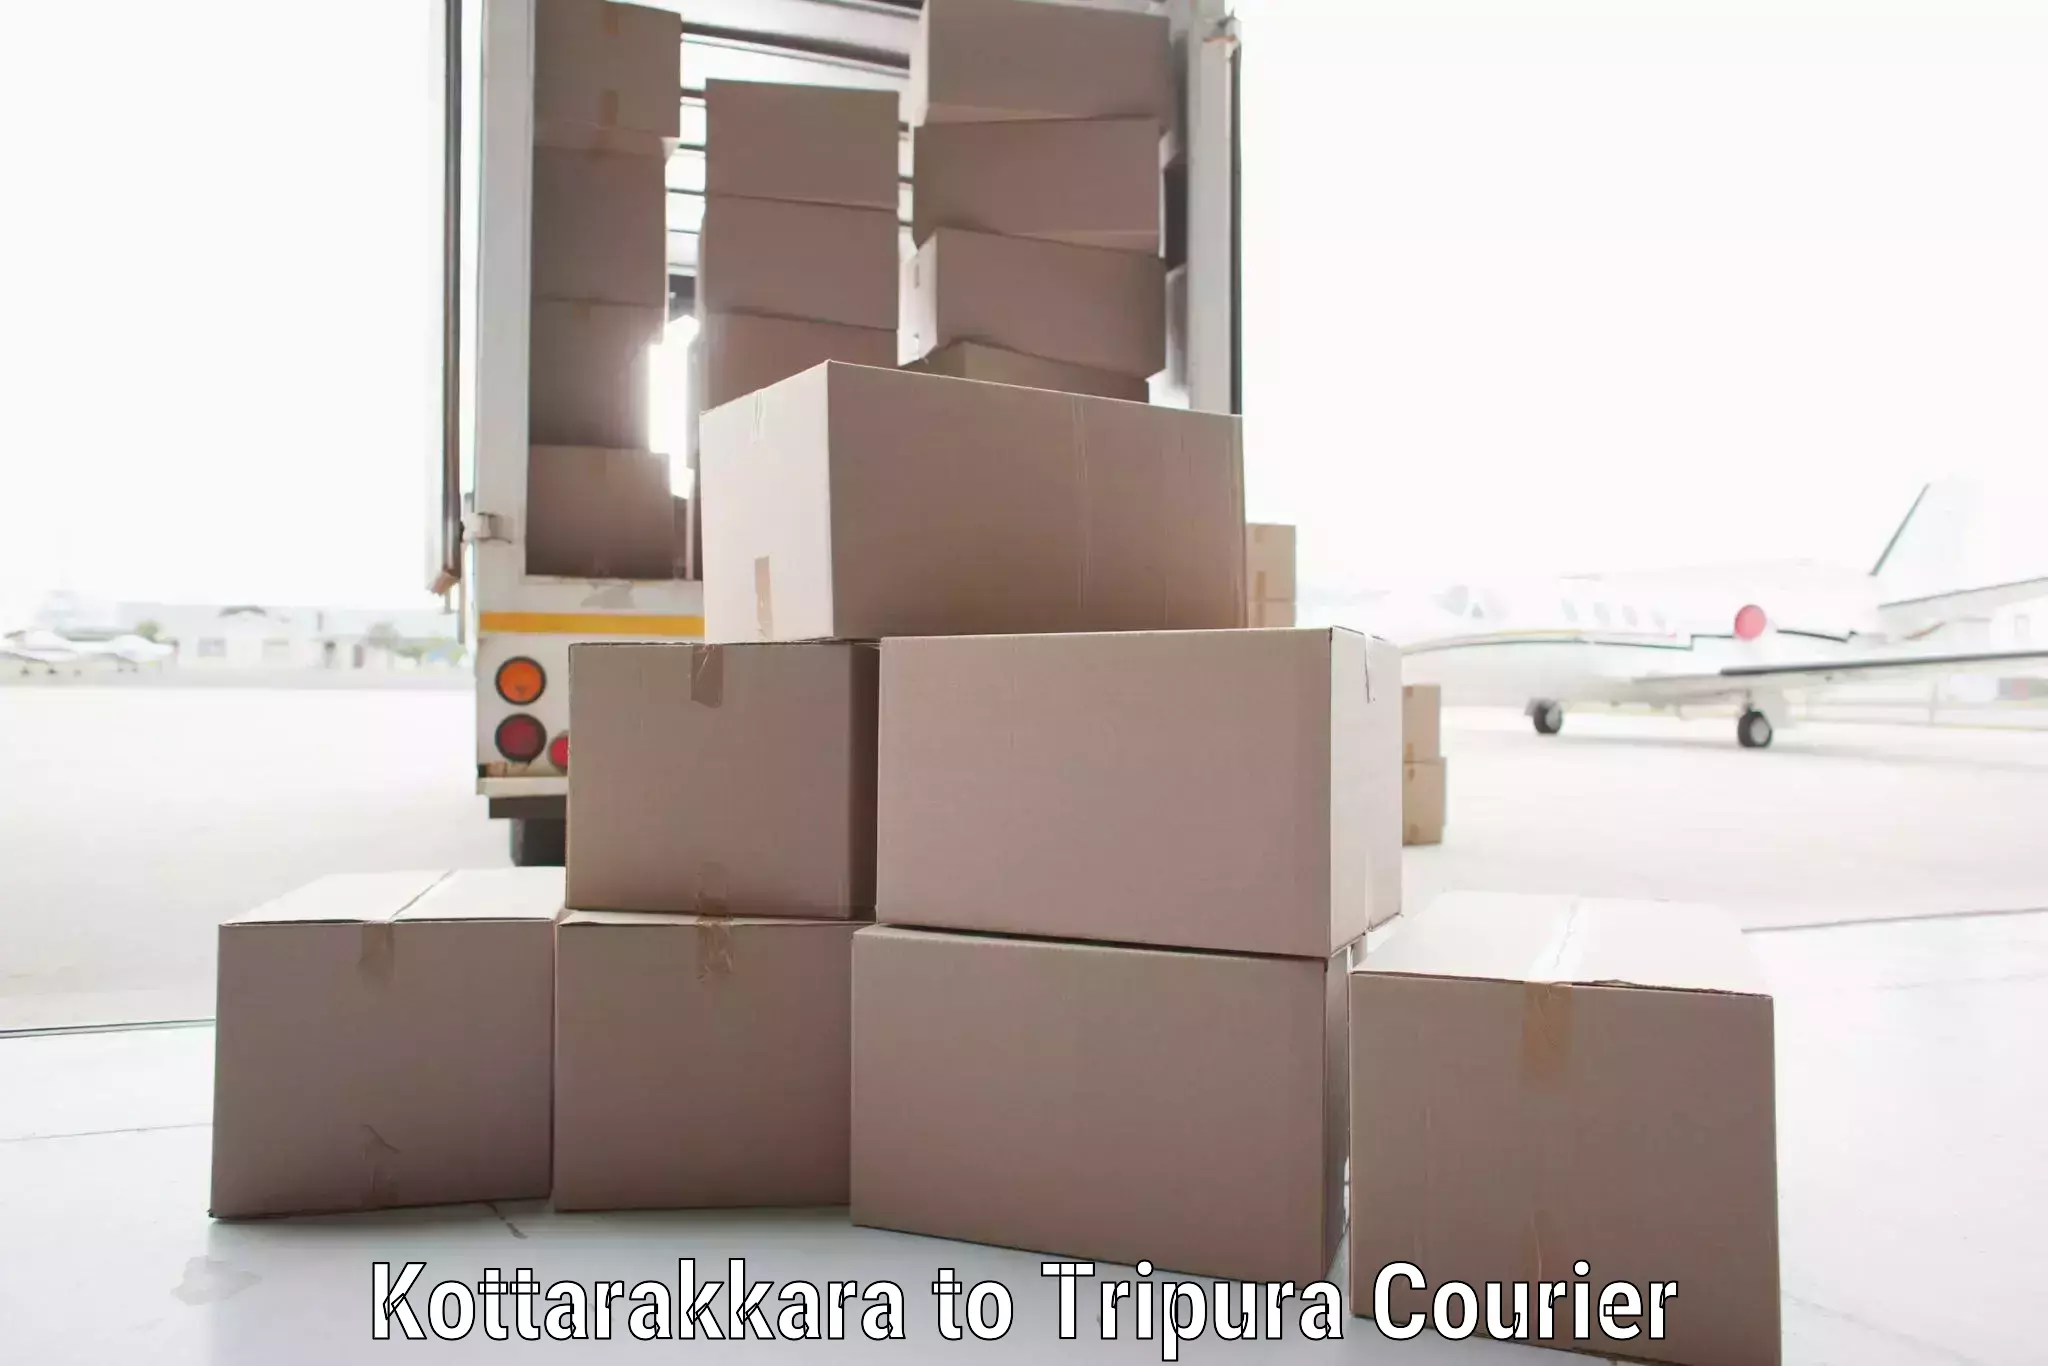 Urban courier service Kottarakkara to Kailashahar